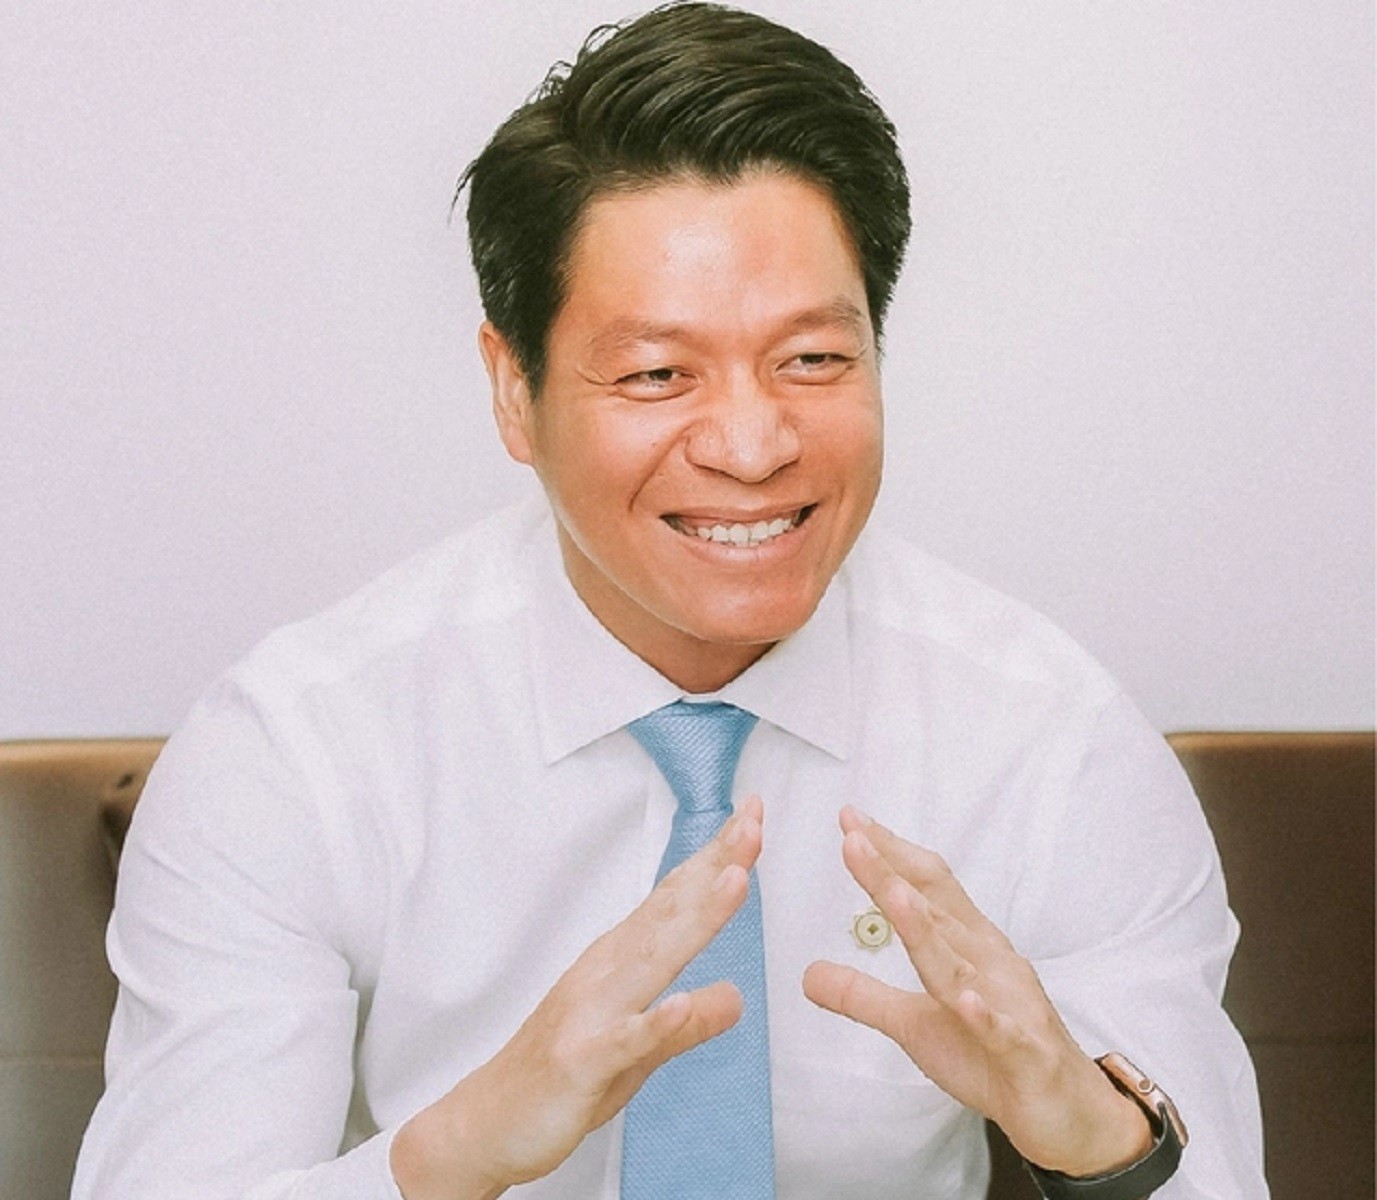 
Tổng giám đốc Phú Đông Group - ông Ngô Quang Phúc
